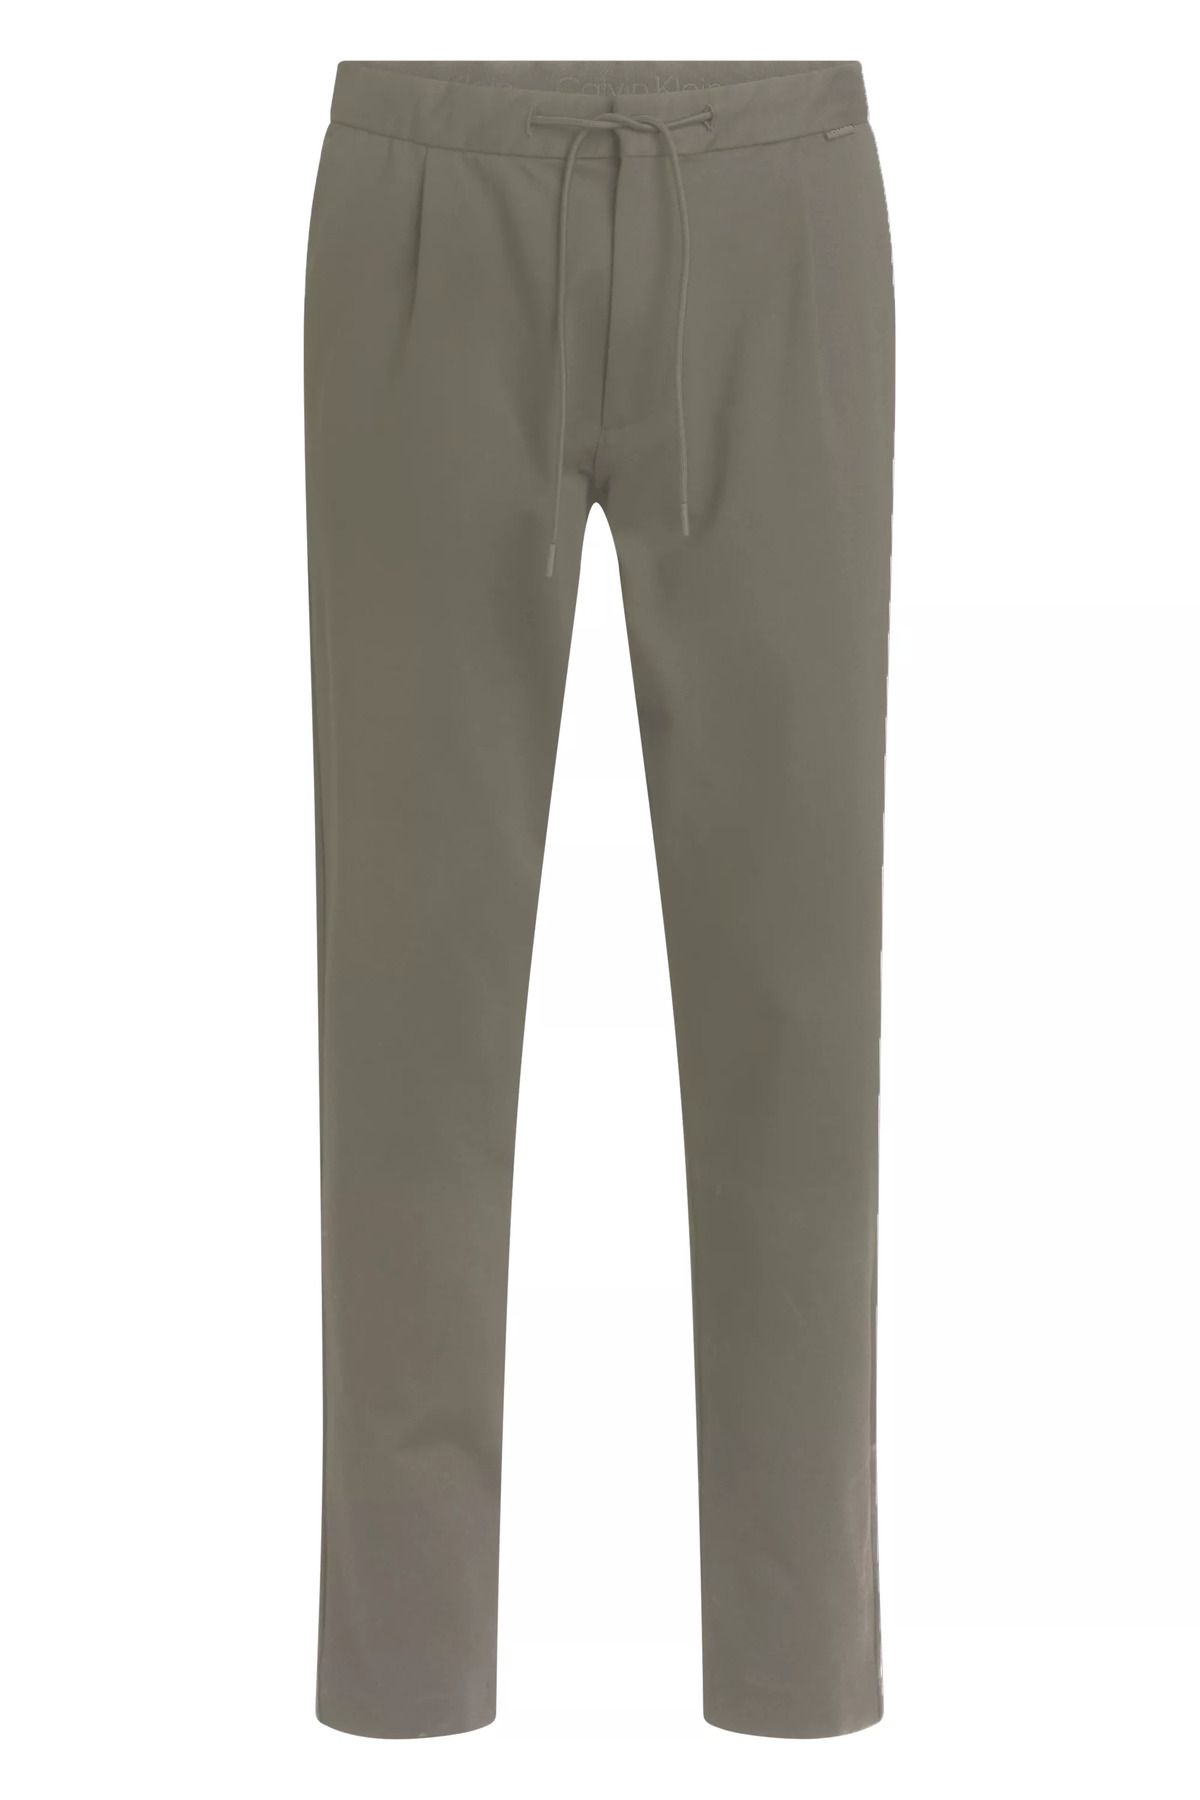 Calvin Klein Erkek Pamuklu Normal Bel 5 Cepli Düğmeli Yeşil Pantolon K10K113648-MSS